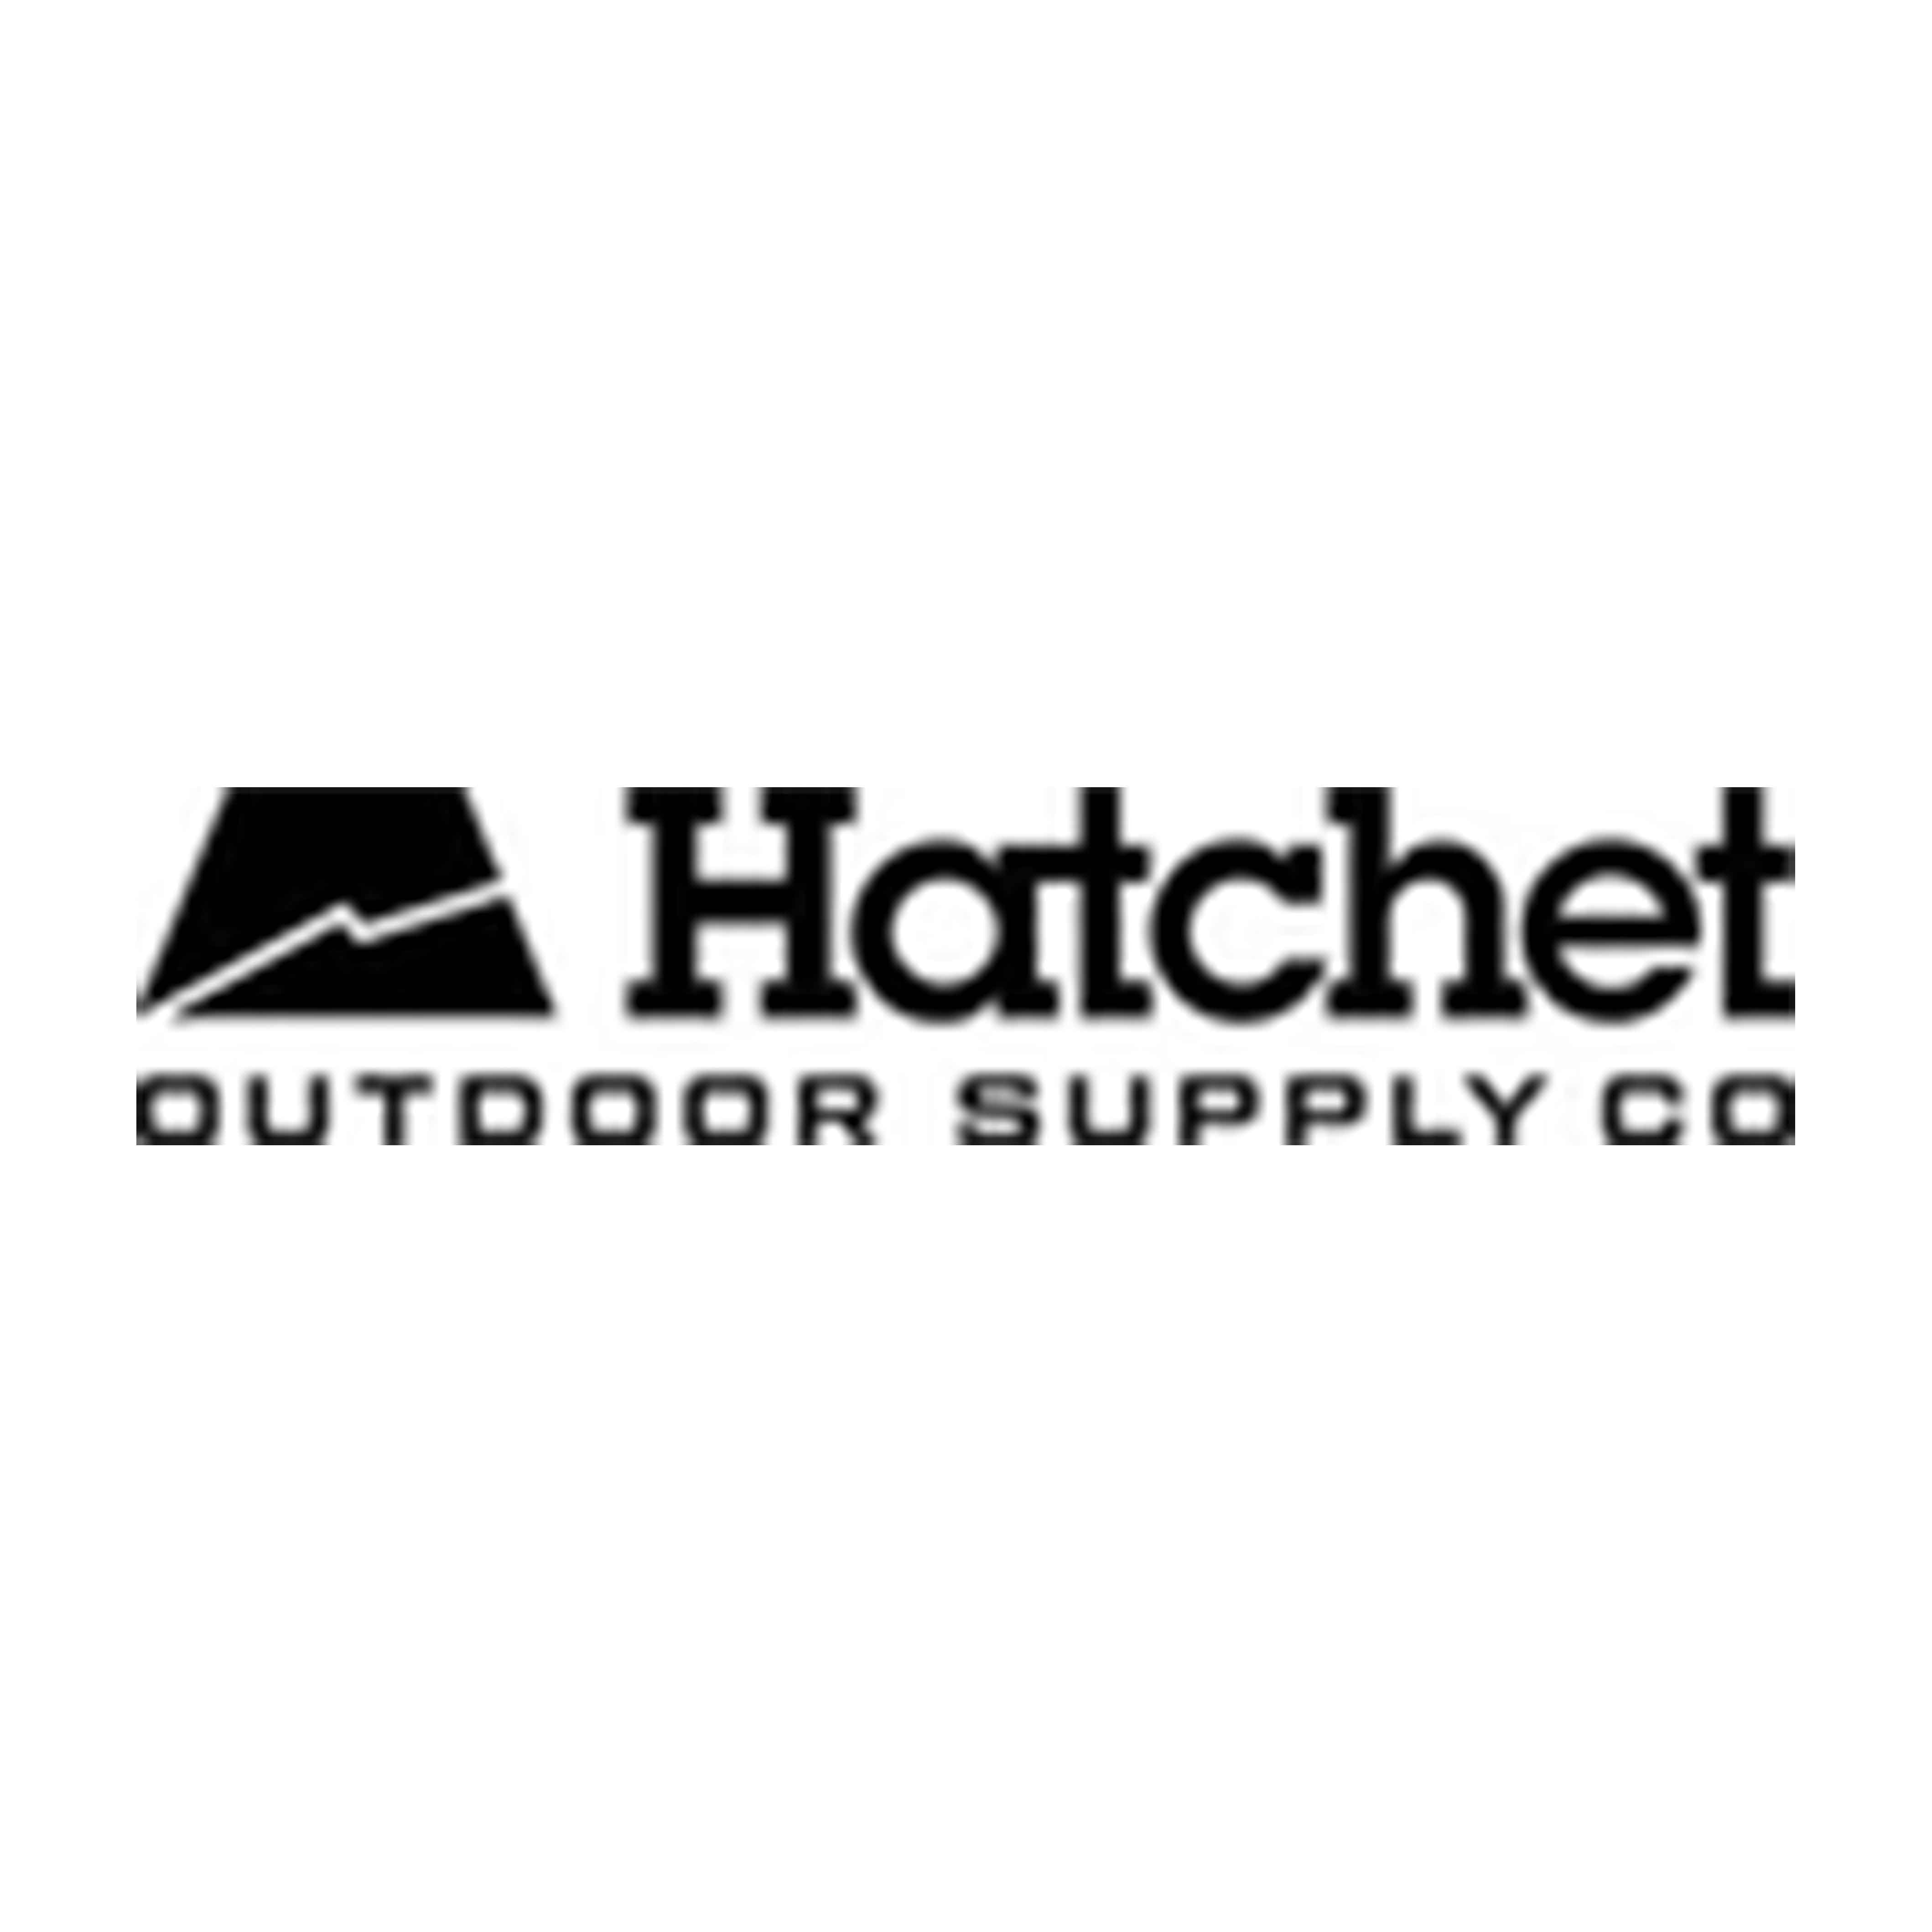 Hatchet Outdoor Supply